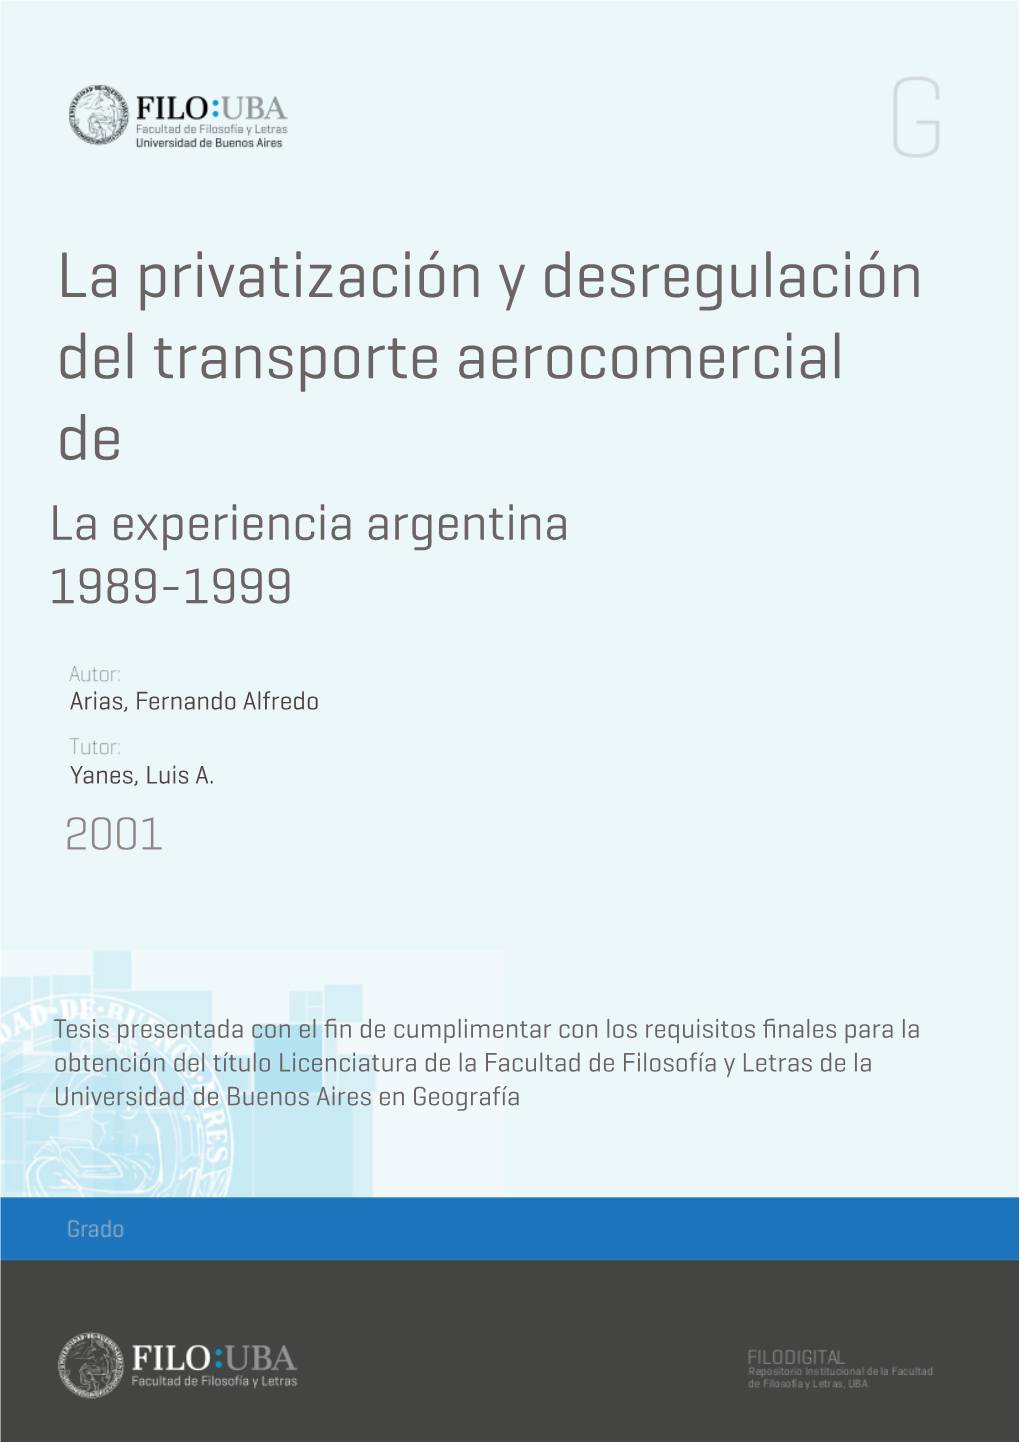 La Privatización Y Desregulación Del Transporte Aerocomercial De La Experiencia Argentina 1989-1999